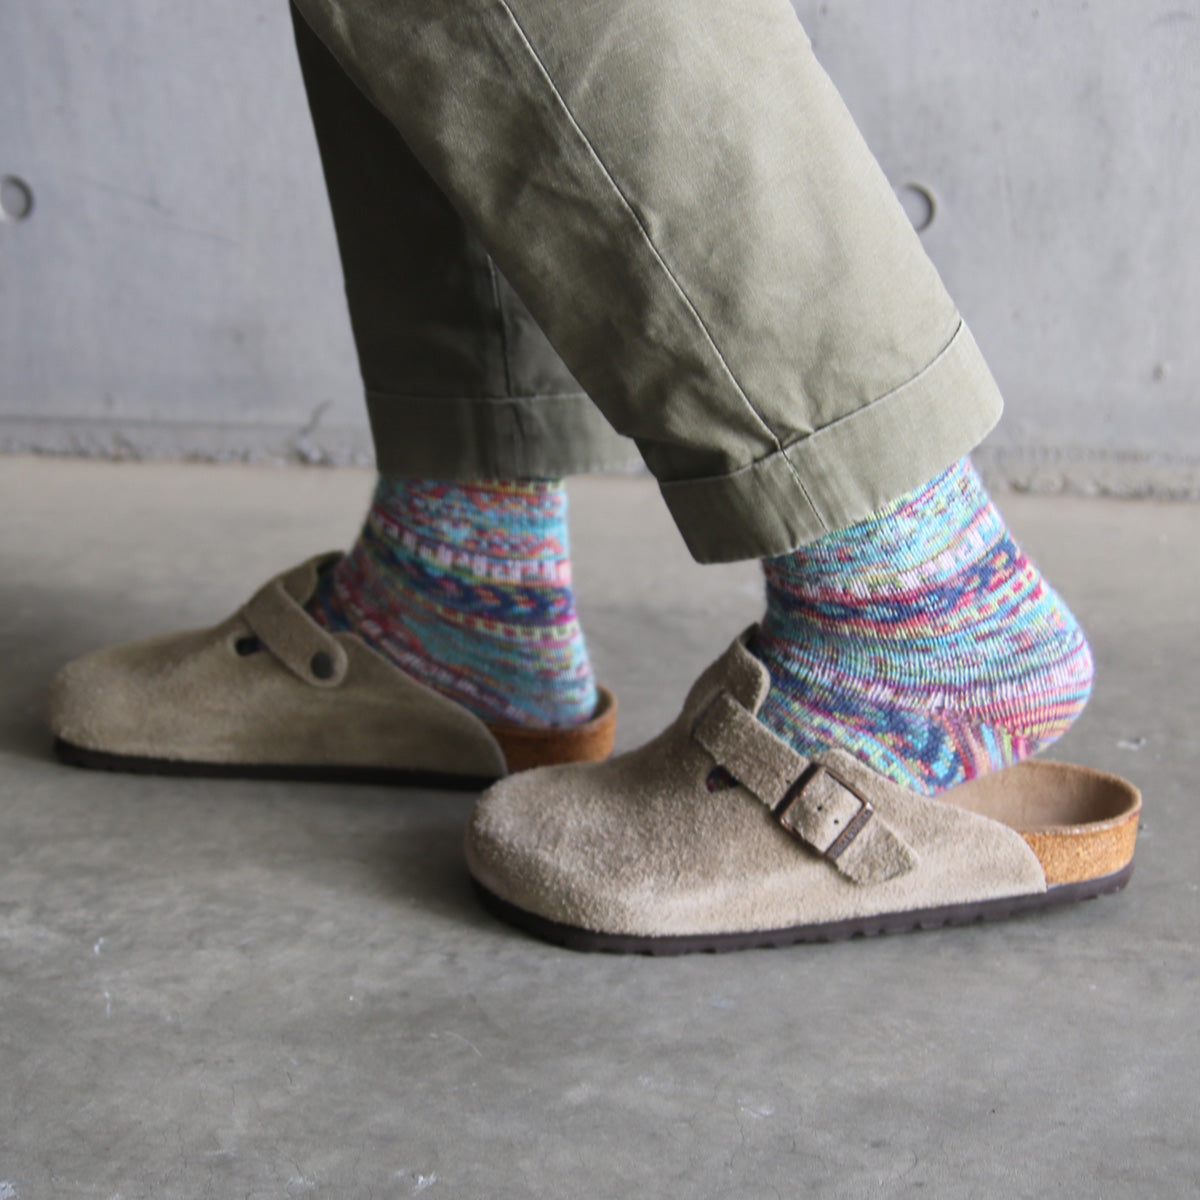 ラナート (LANART) 米国製ベビーアルパカソックス靴下 Artistic Baby Alpaca Socks[SANTAFE/LAVENDER]